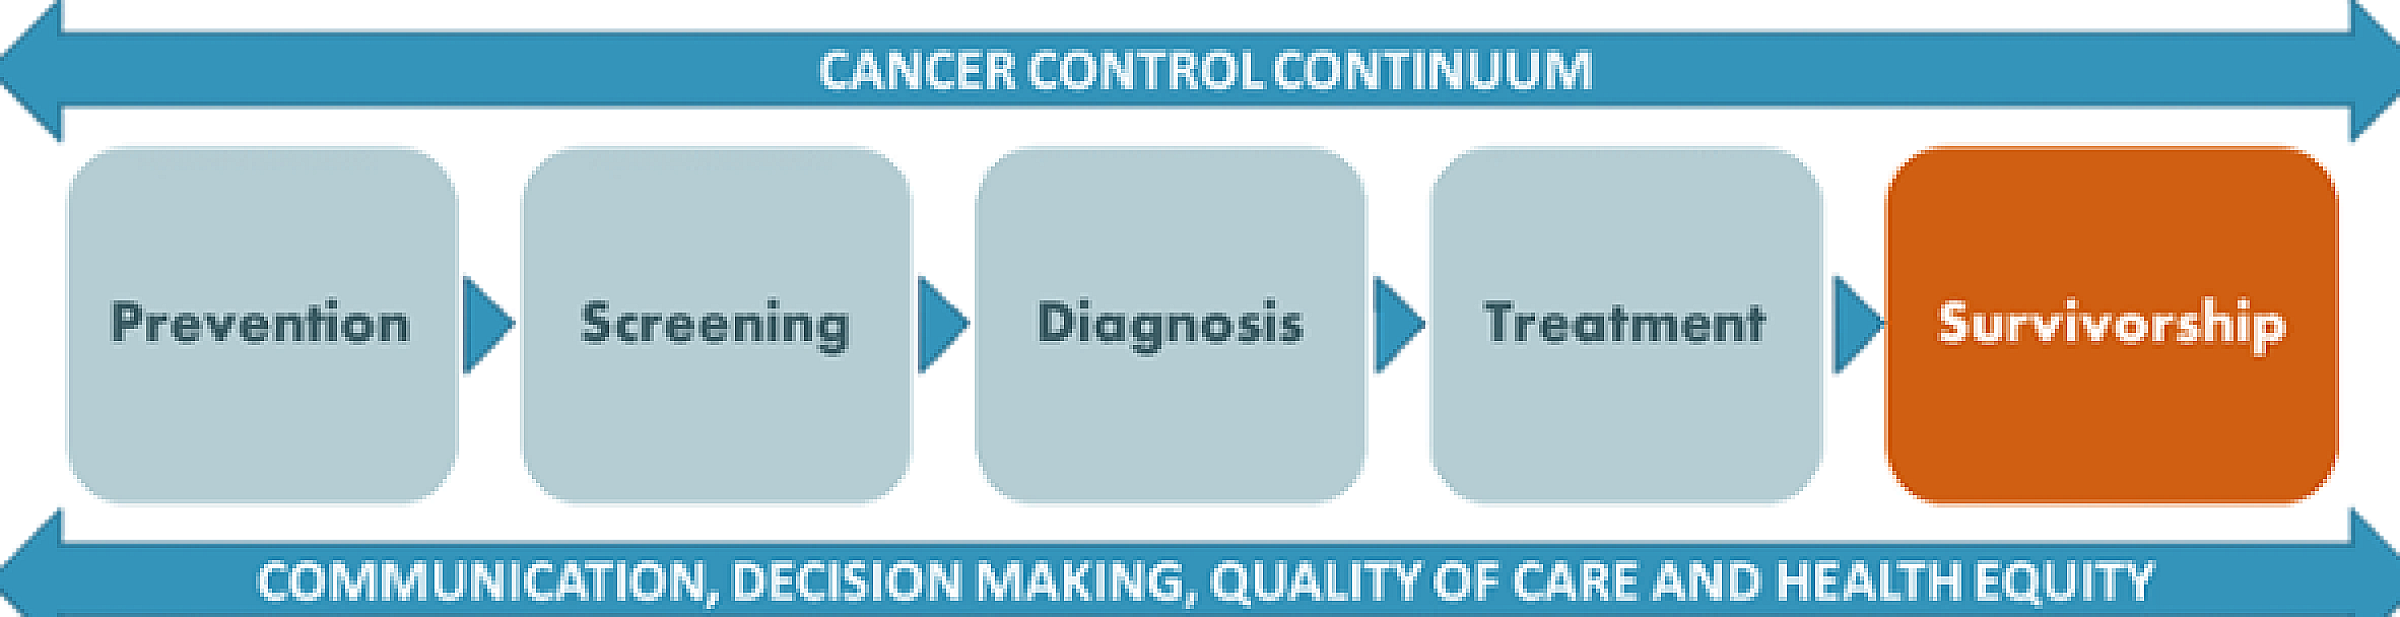 Cancer Control Continuum diagram